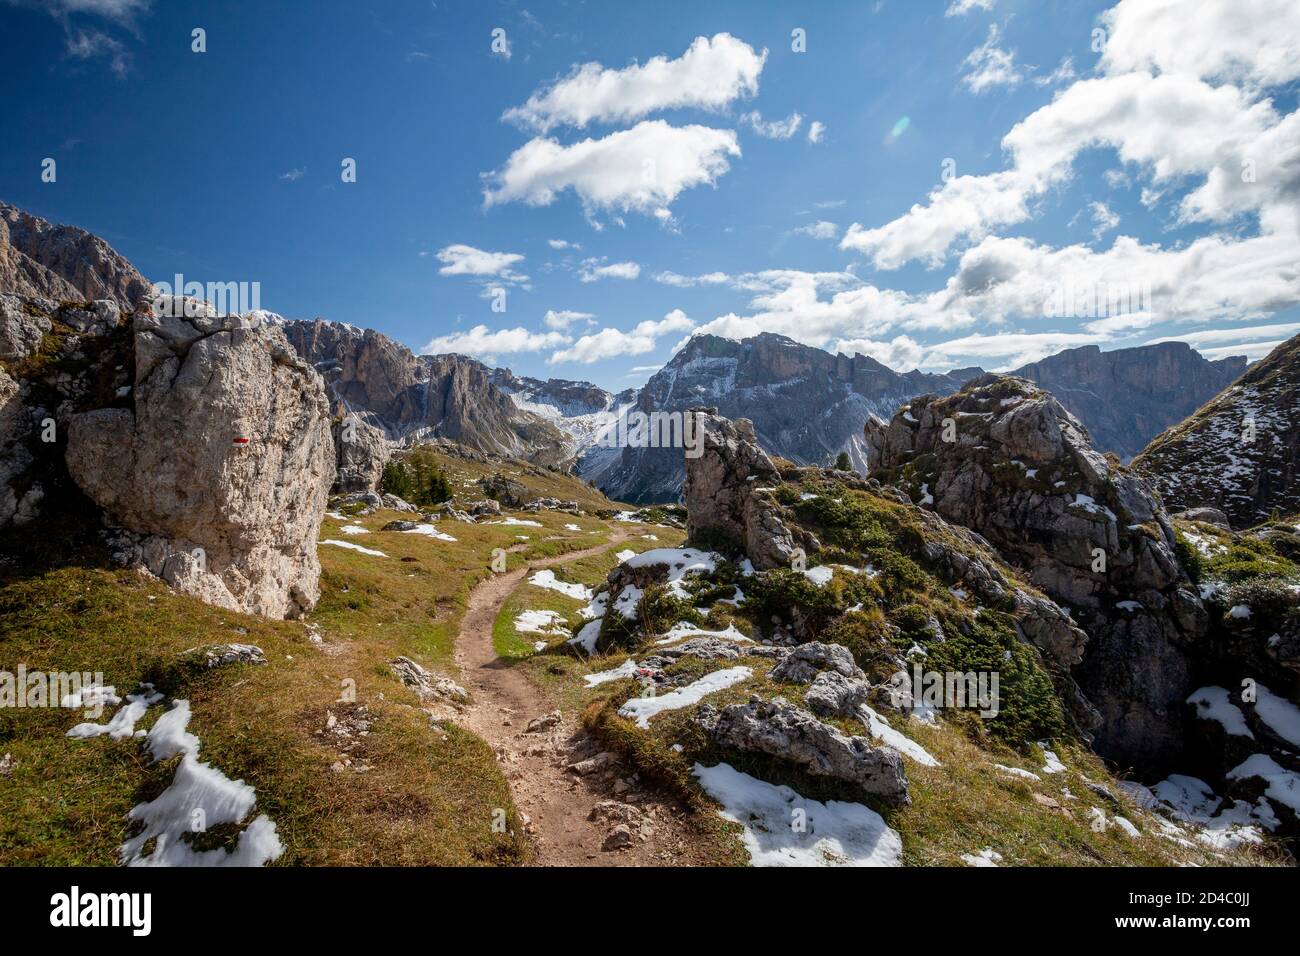 Ein Wanderweg schlängelt sich durch die Steine der Dolomiten, Richtung Berge am Horizont, in der Geisler-Gruppe, Südtirol, Italien Stockfoto